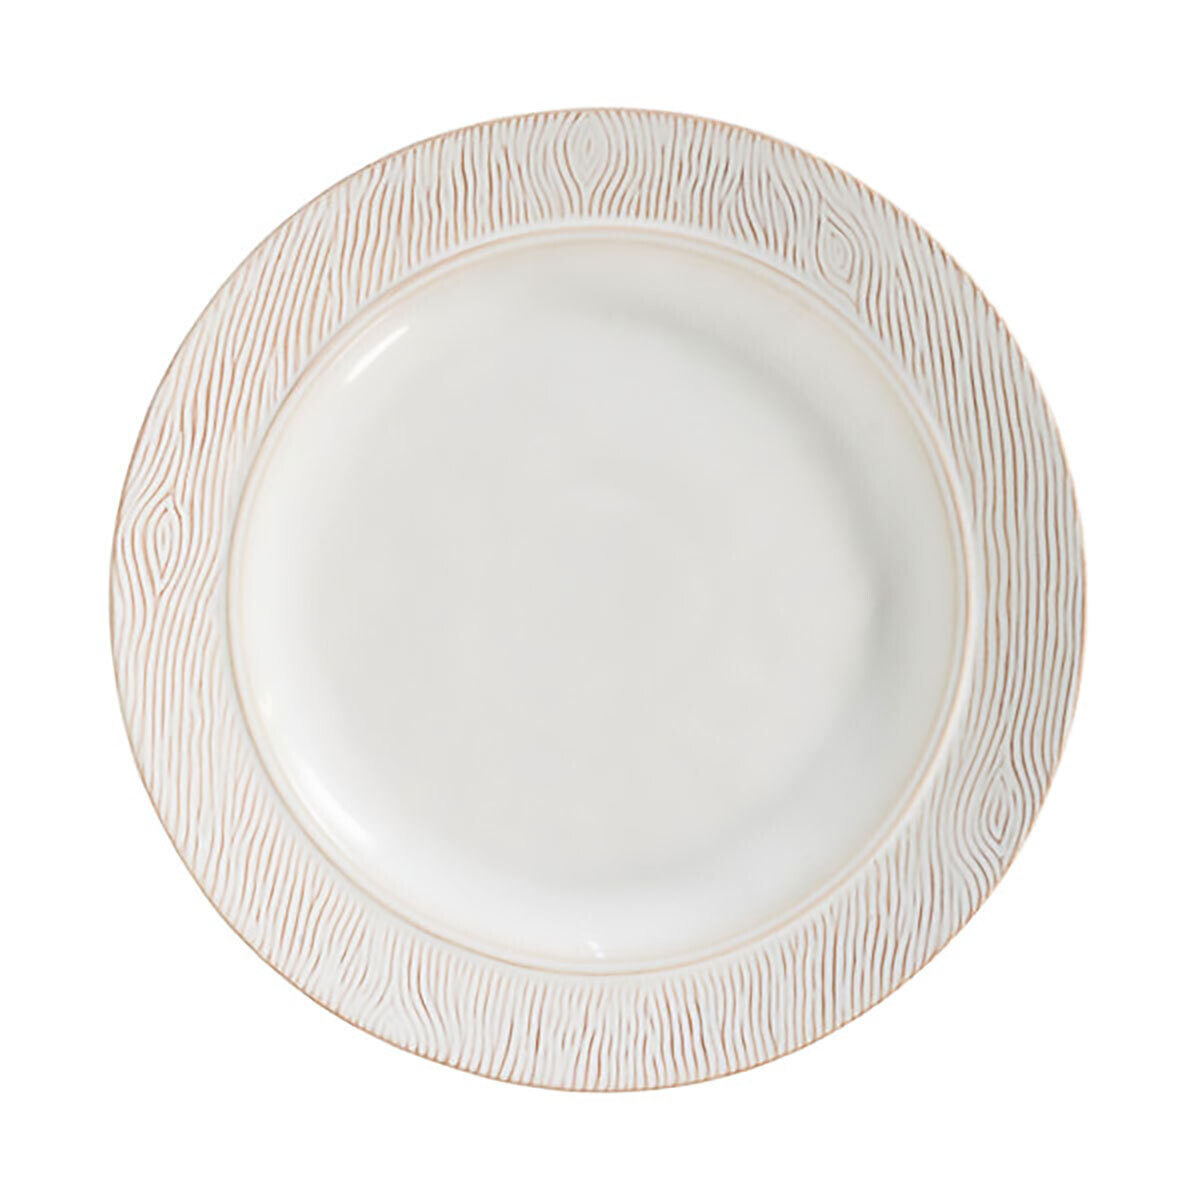 Juliska Blenheim Oak Dinner Plate Whitewash BK01/10